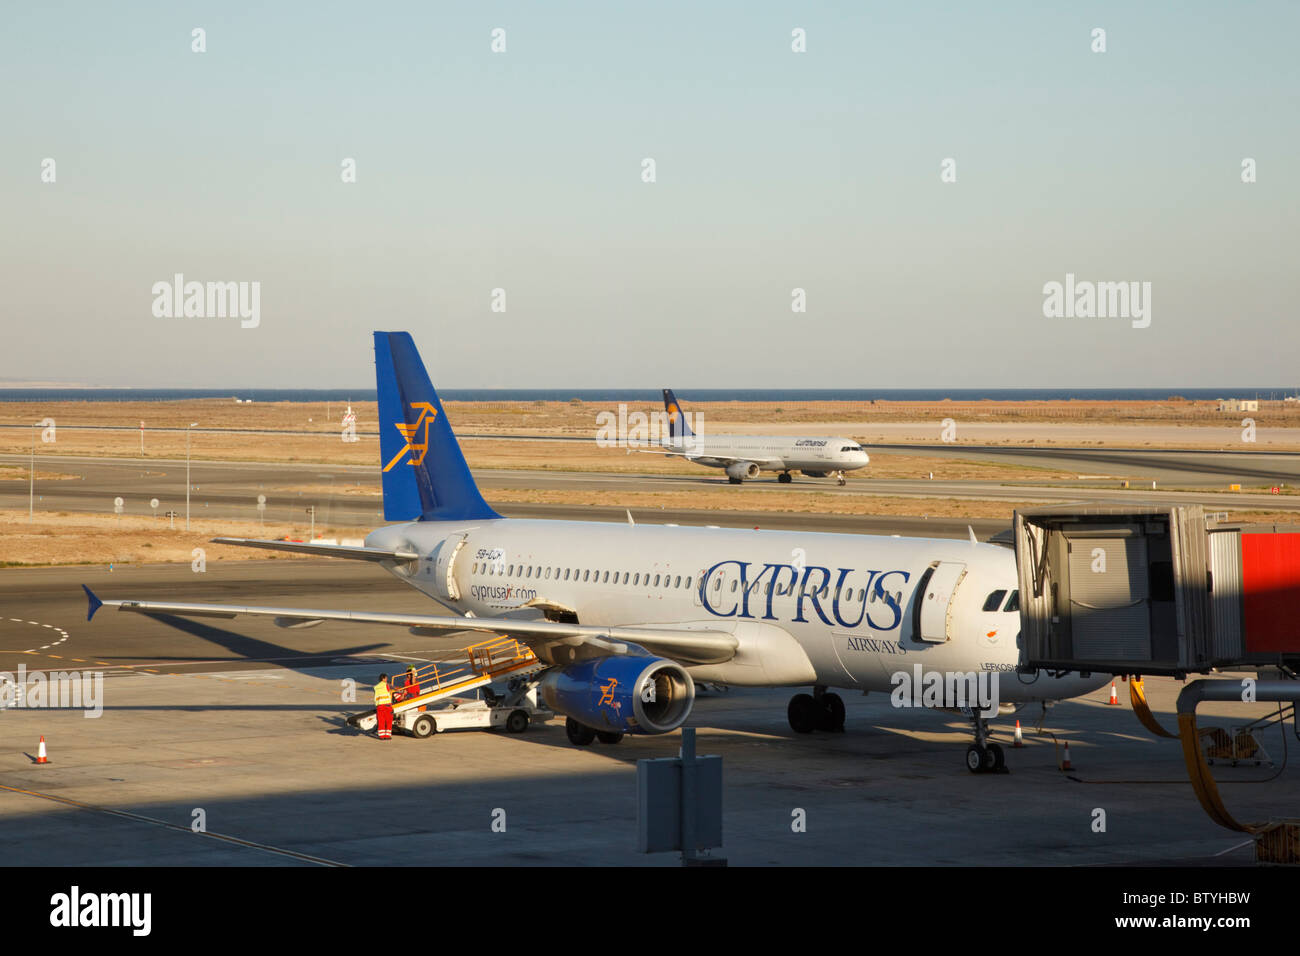 Cyprus Airways Airbus A300-232 appareil à l'aéroport de Larnaca, Chypre. Banque D'Images